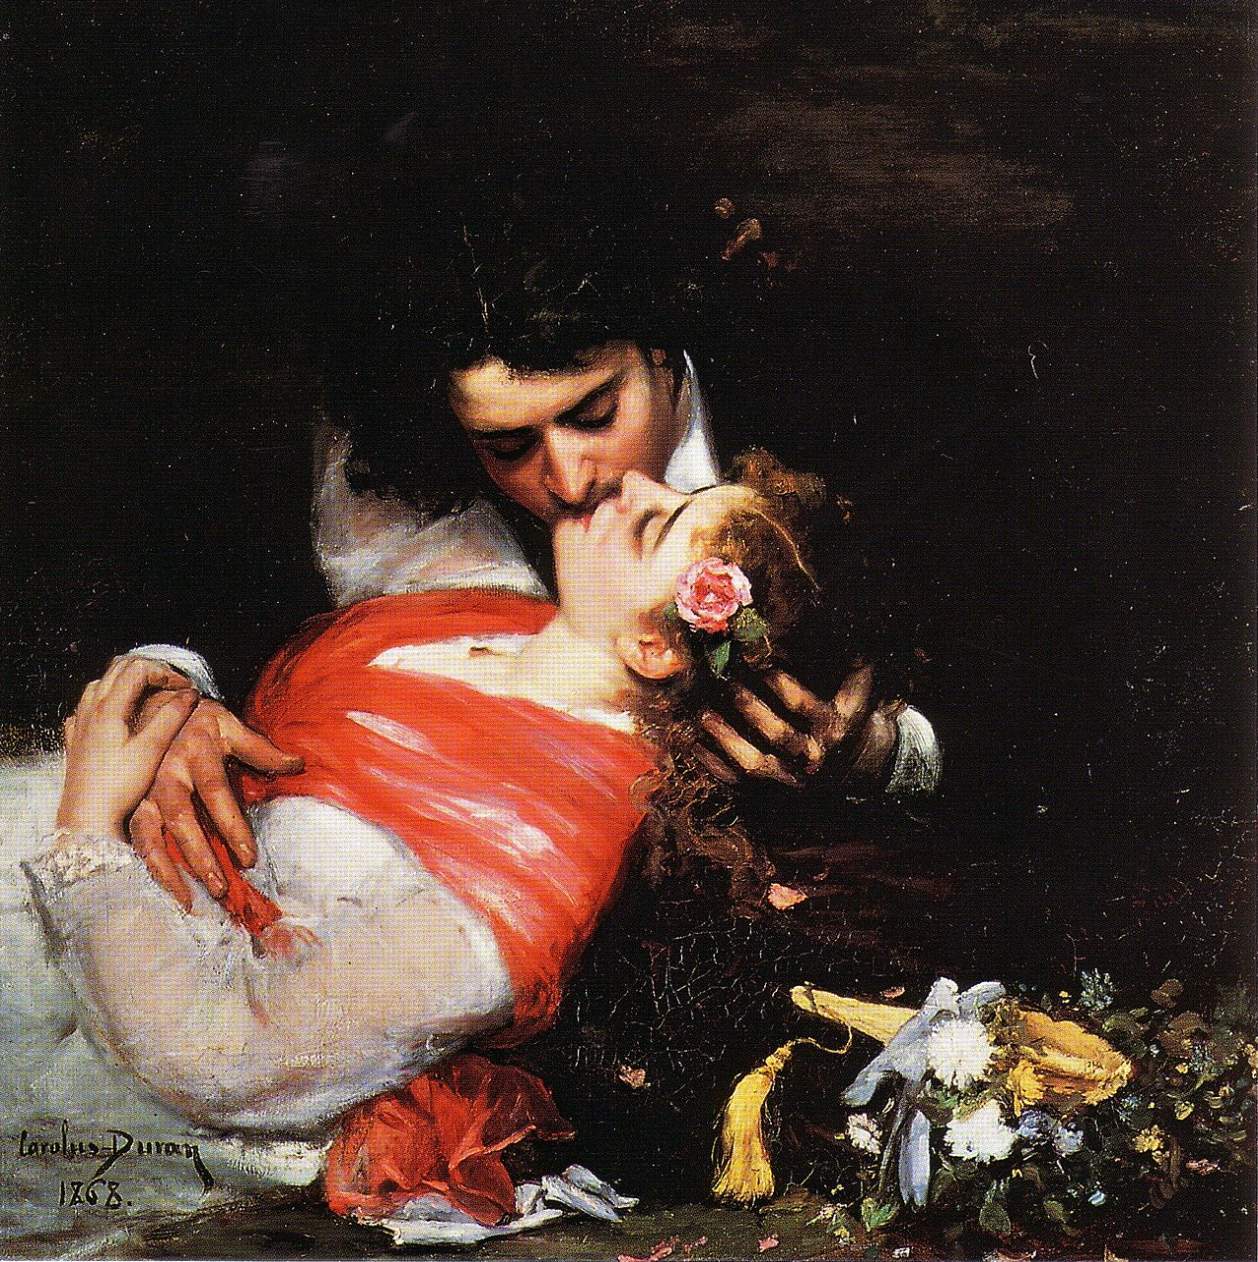 Le Baiser (The Kiss) (1868), Carolus-Duran